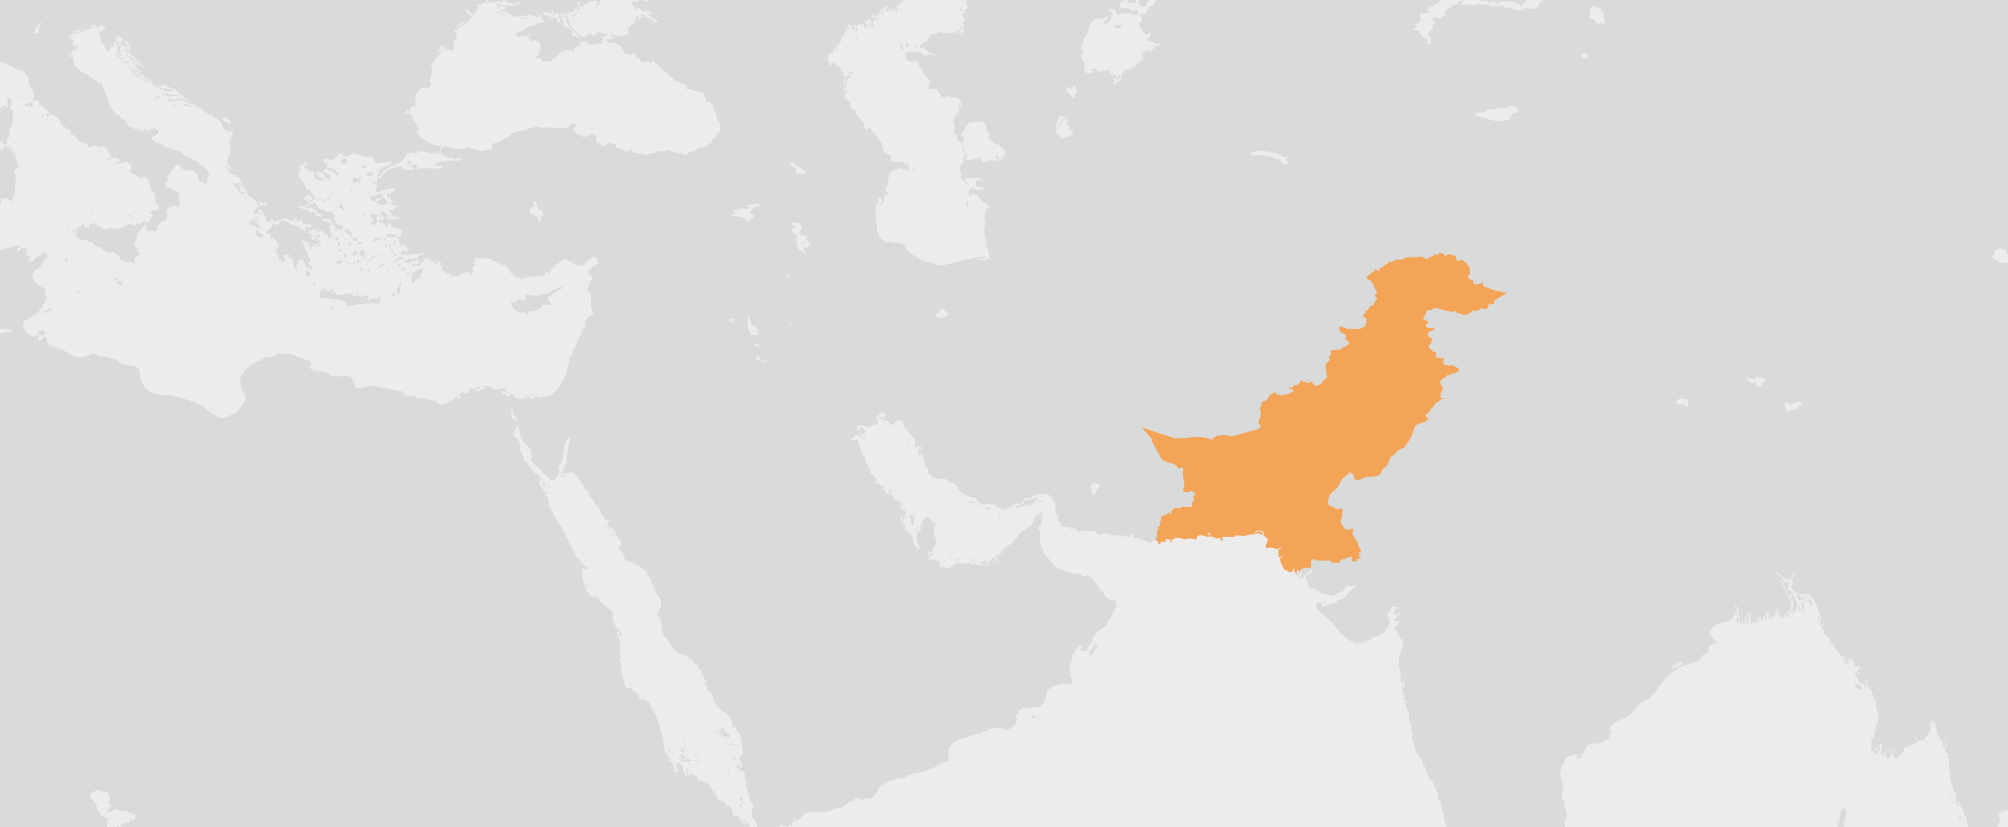 Pákistán - umístění na mapě